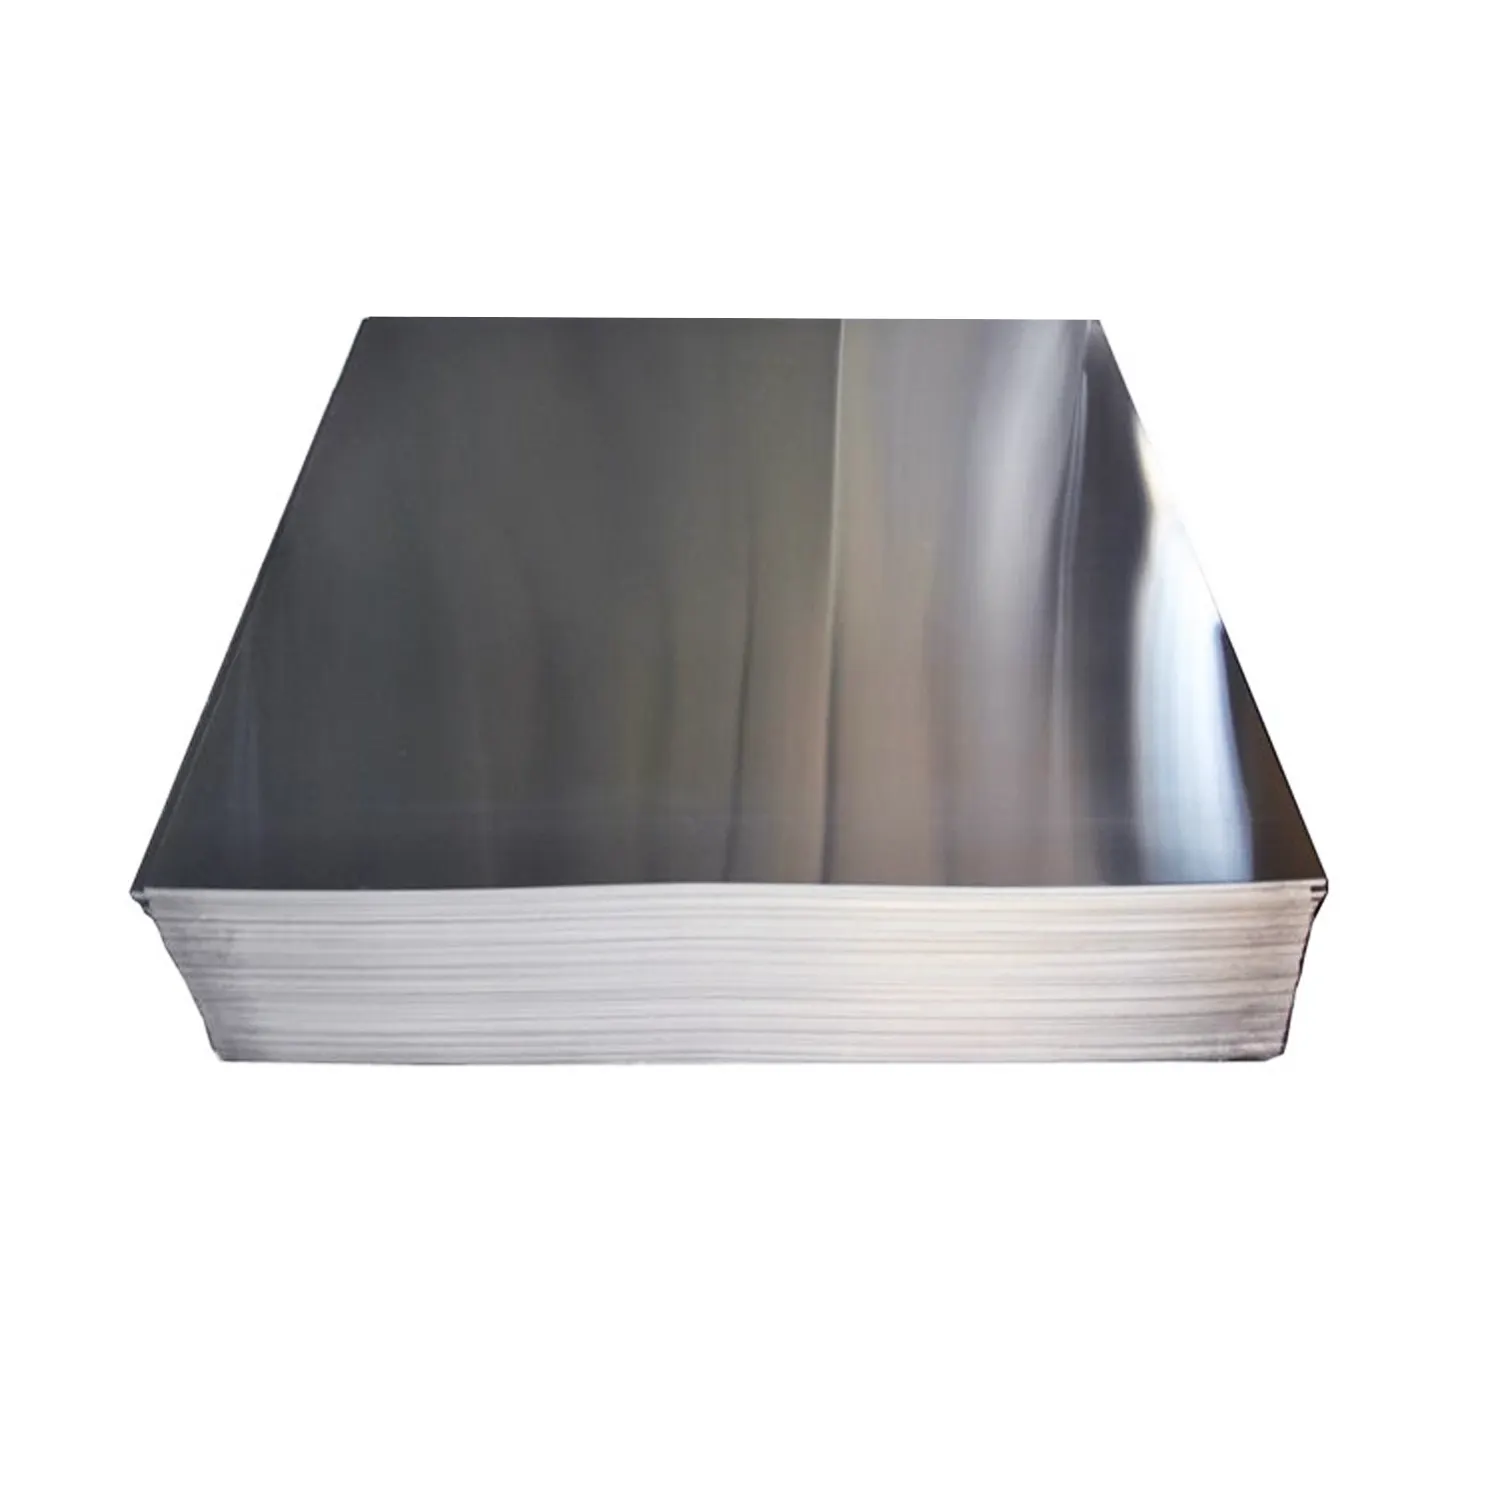 Pelat Aluminium 5754 1100 lembar aluminium 6063 lembar koil putih Allumino 7075 pelat Aluminium t6